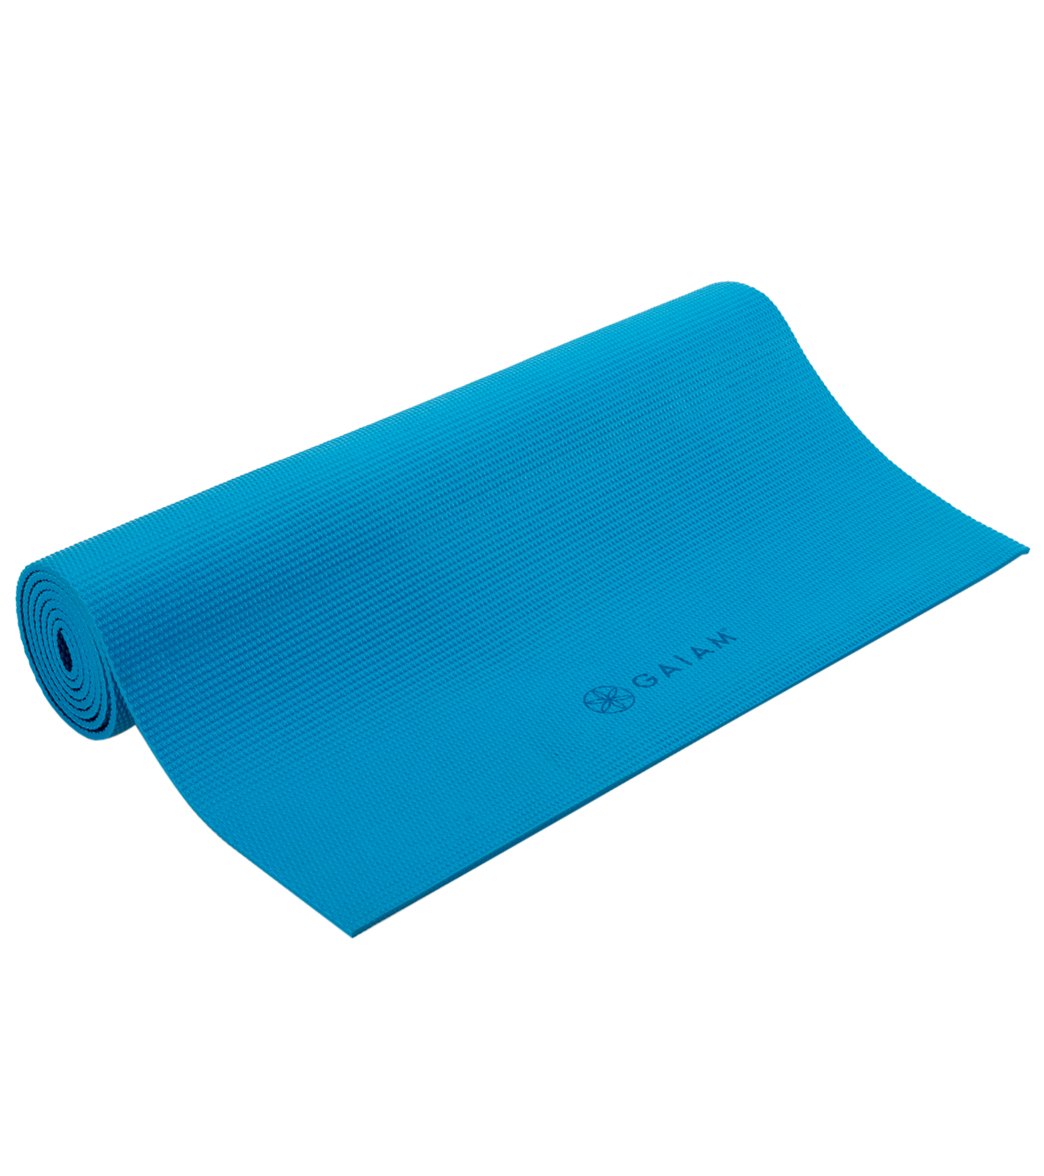 Buy Gaiam Studio Select Stable Grip Yoga Mat at